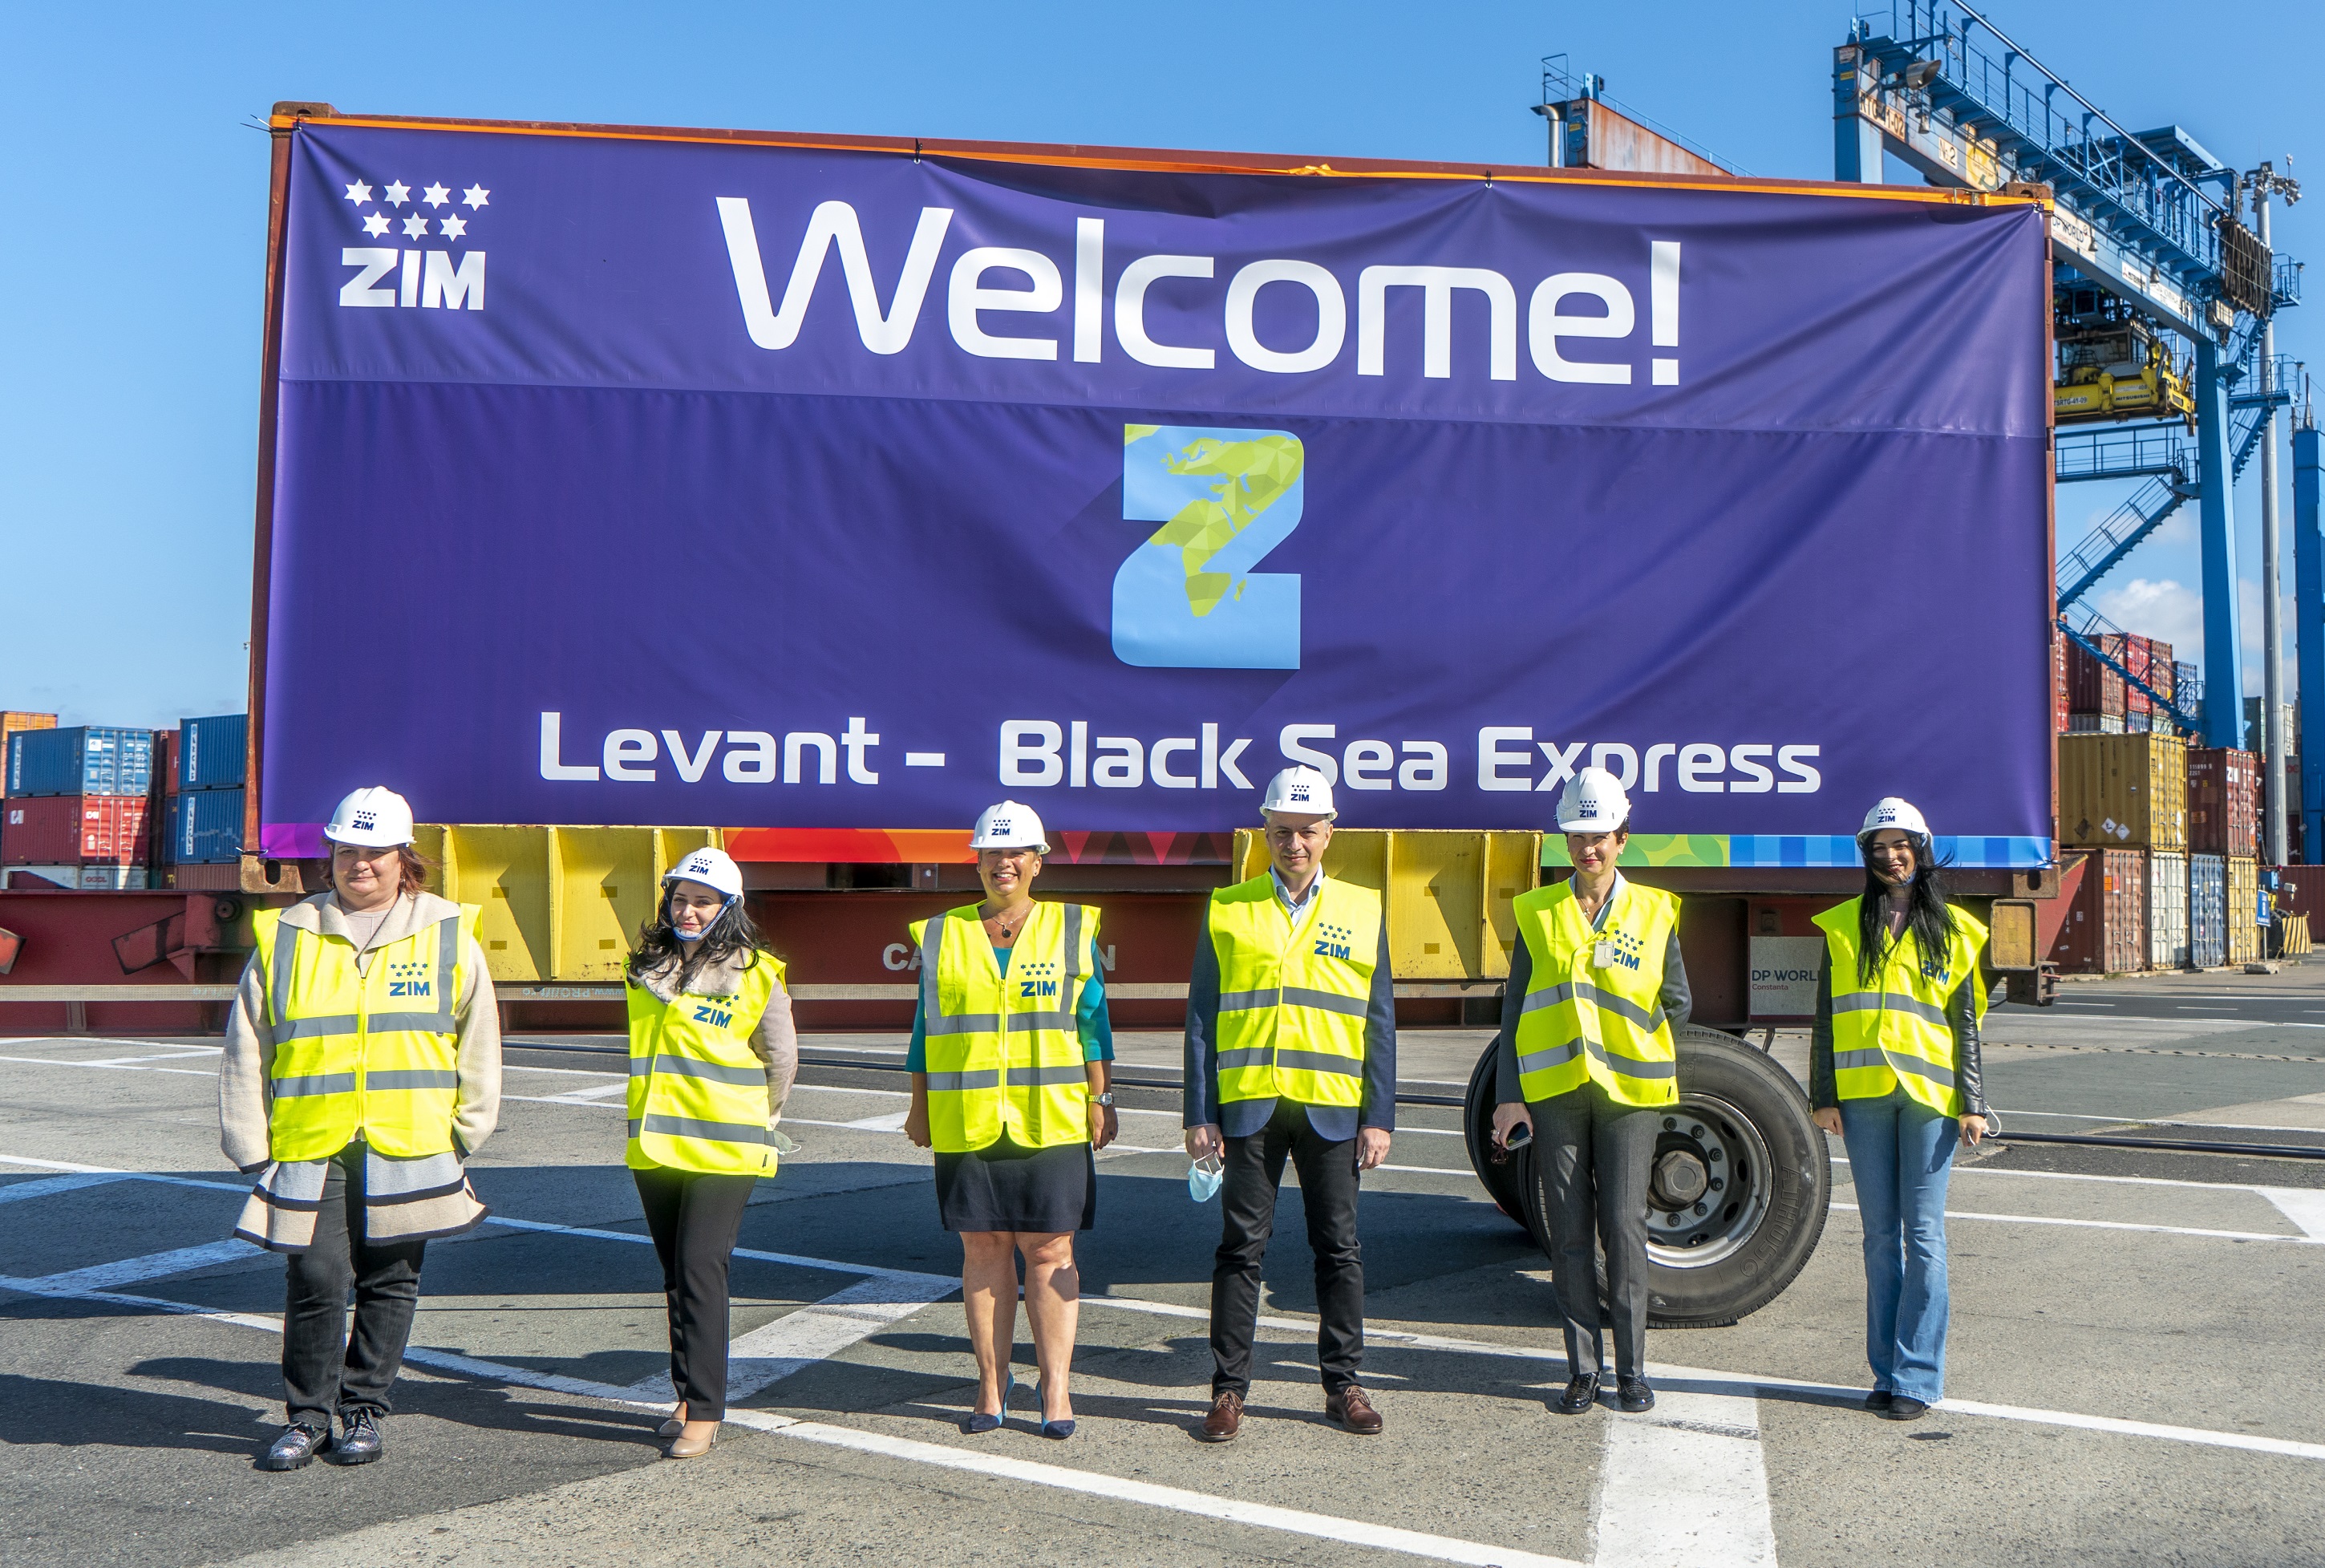 O nouă linie maritimă trece pe la Constanța – ZIM a lansat Levant – Black Sea Express (LBX)